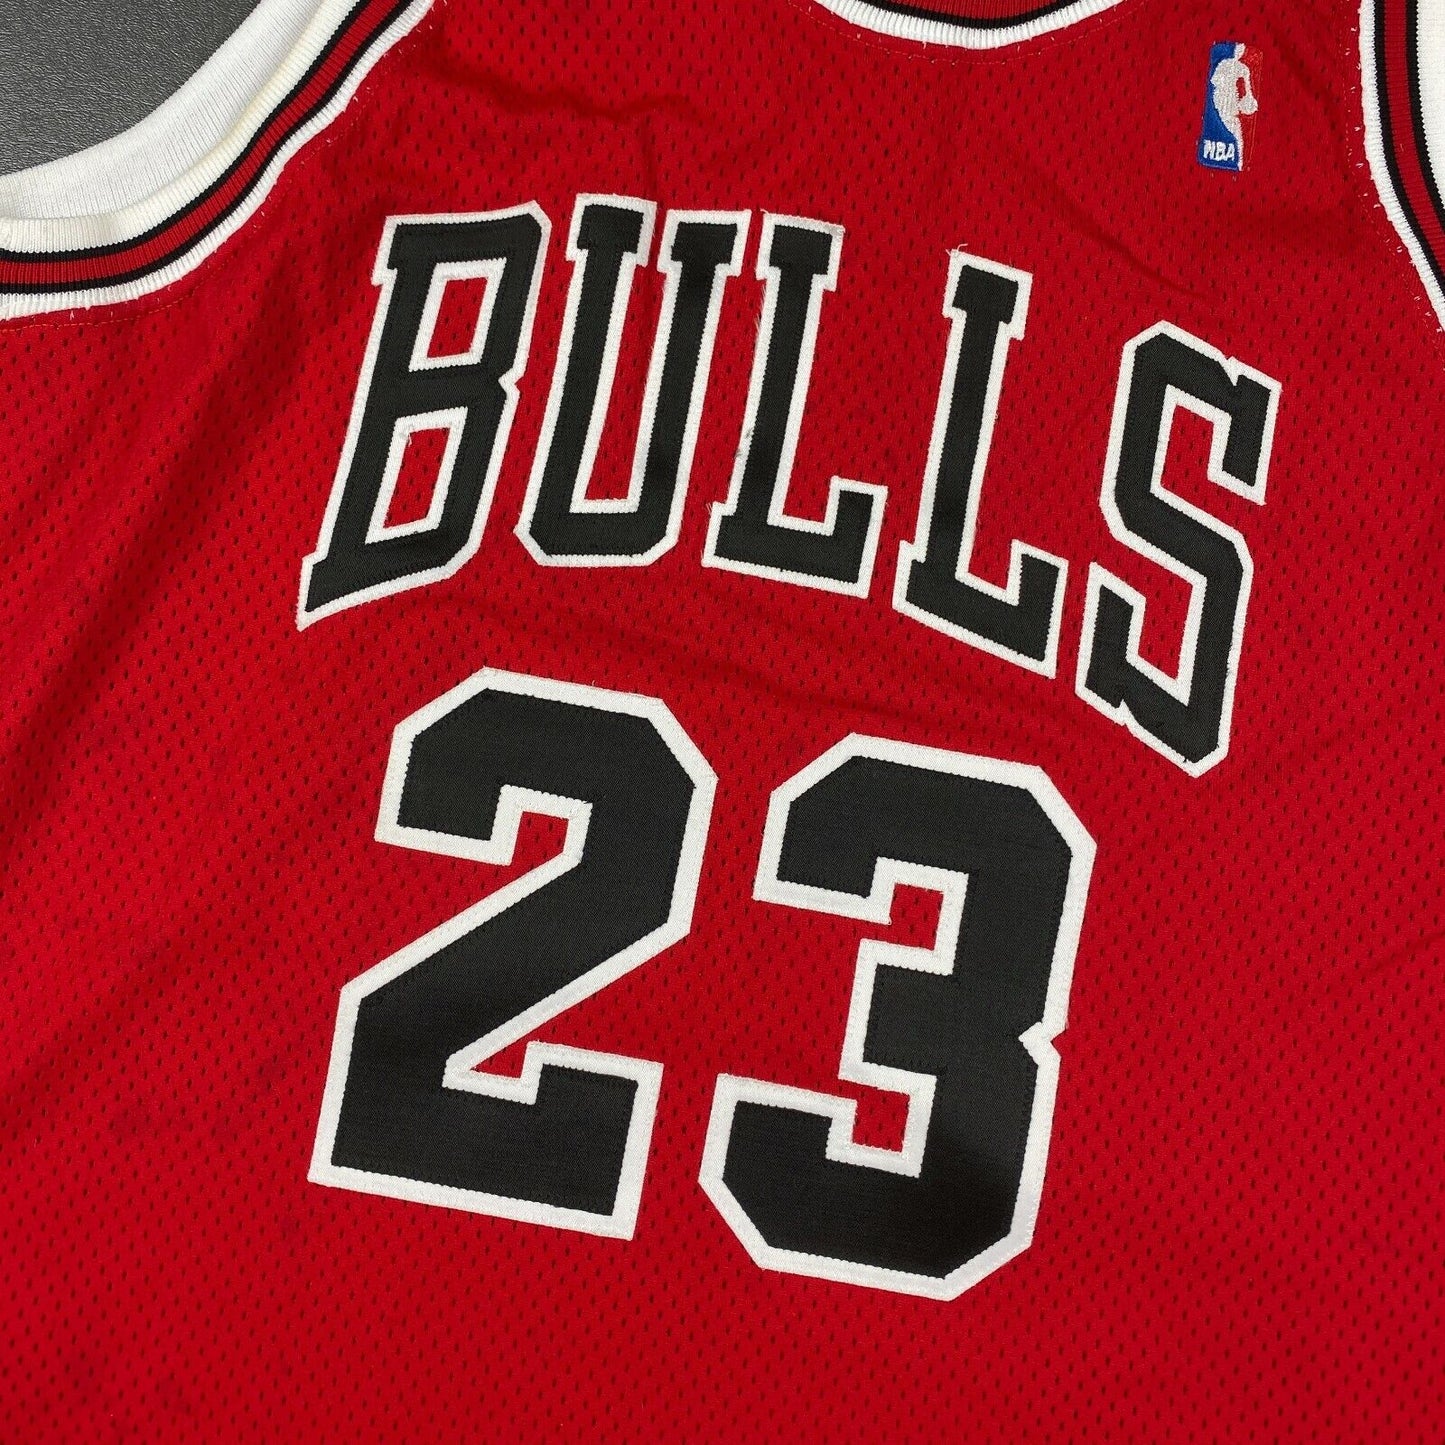 100% Authentic Michael Jordan Vintage Champion 95 96 Bulls Jersey 44 L pro cut